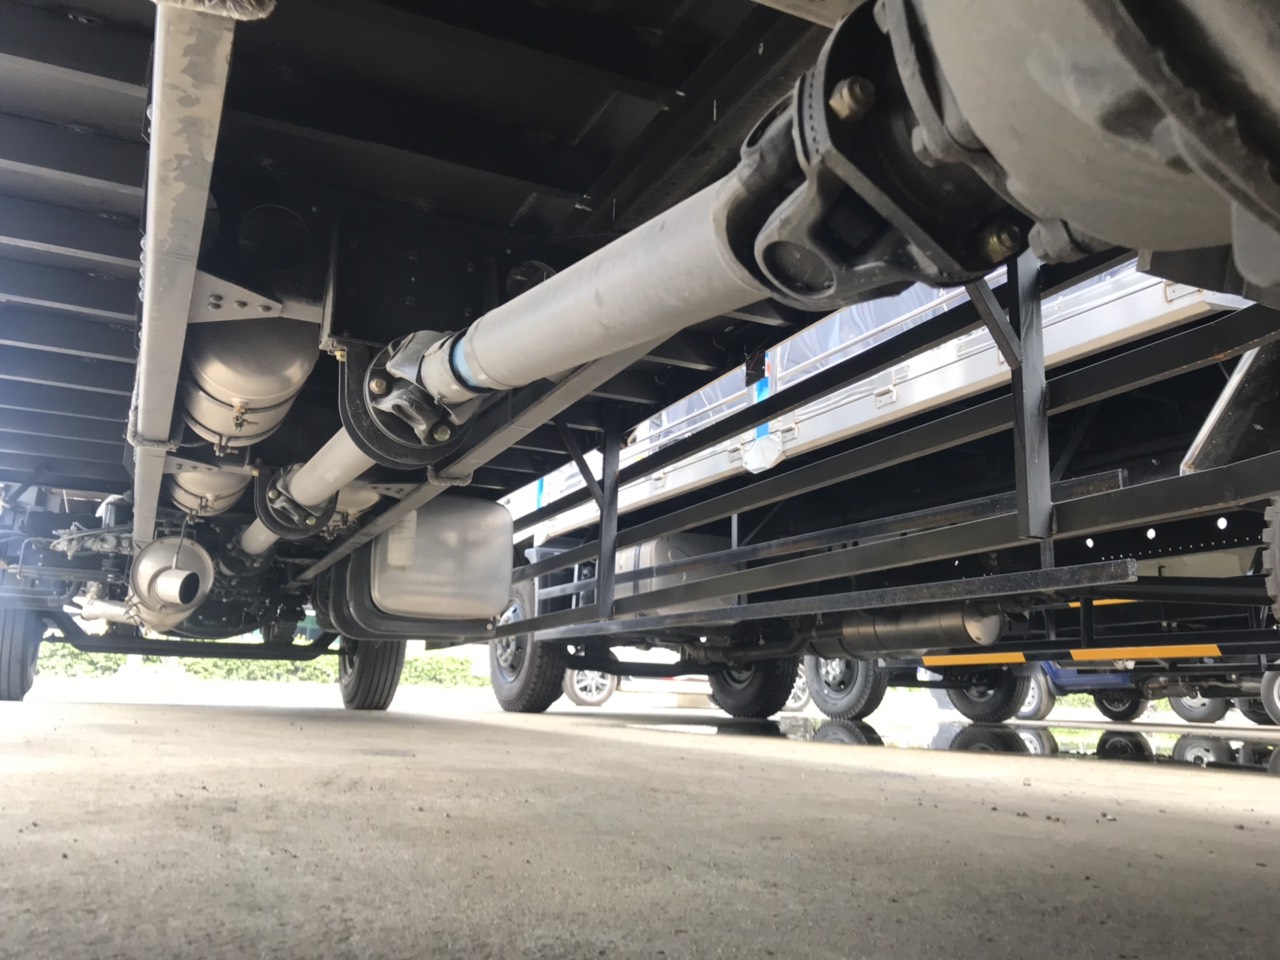 Xe tải 5 tấn - dưới 10 tấn 2019 - Xe tải Faw 8 tấn thùng dài, Faw thùng kín